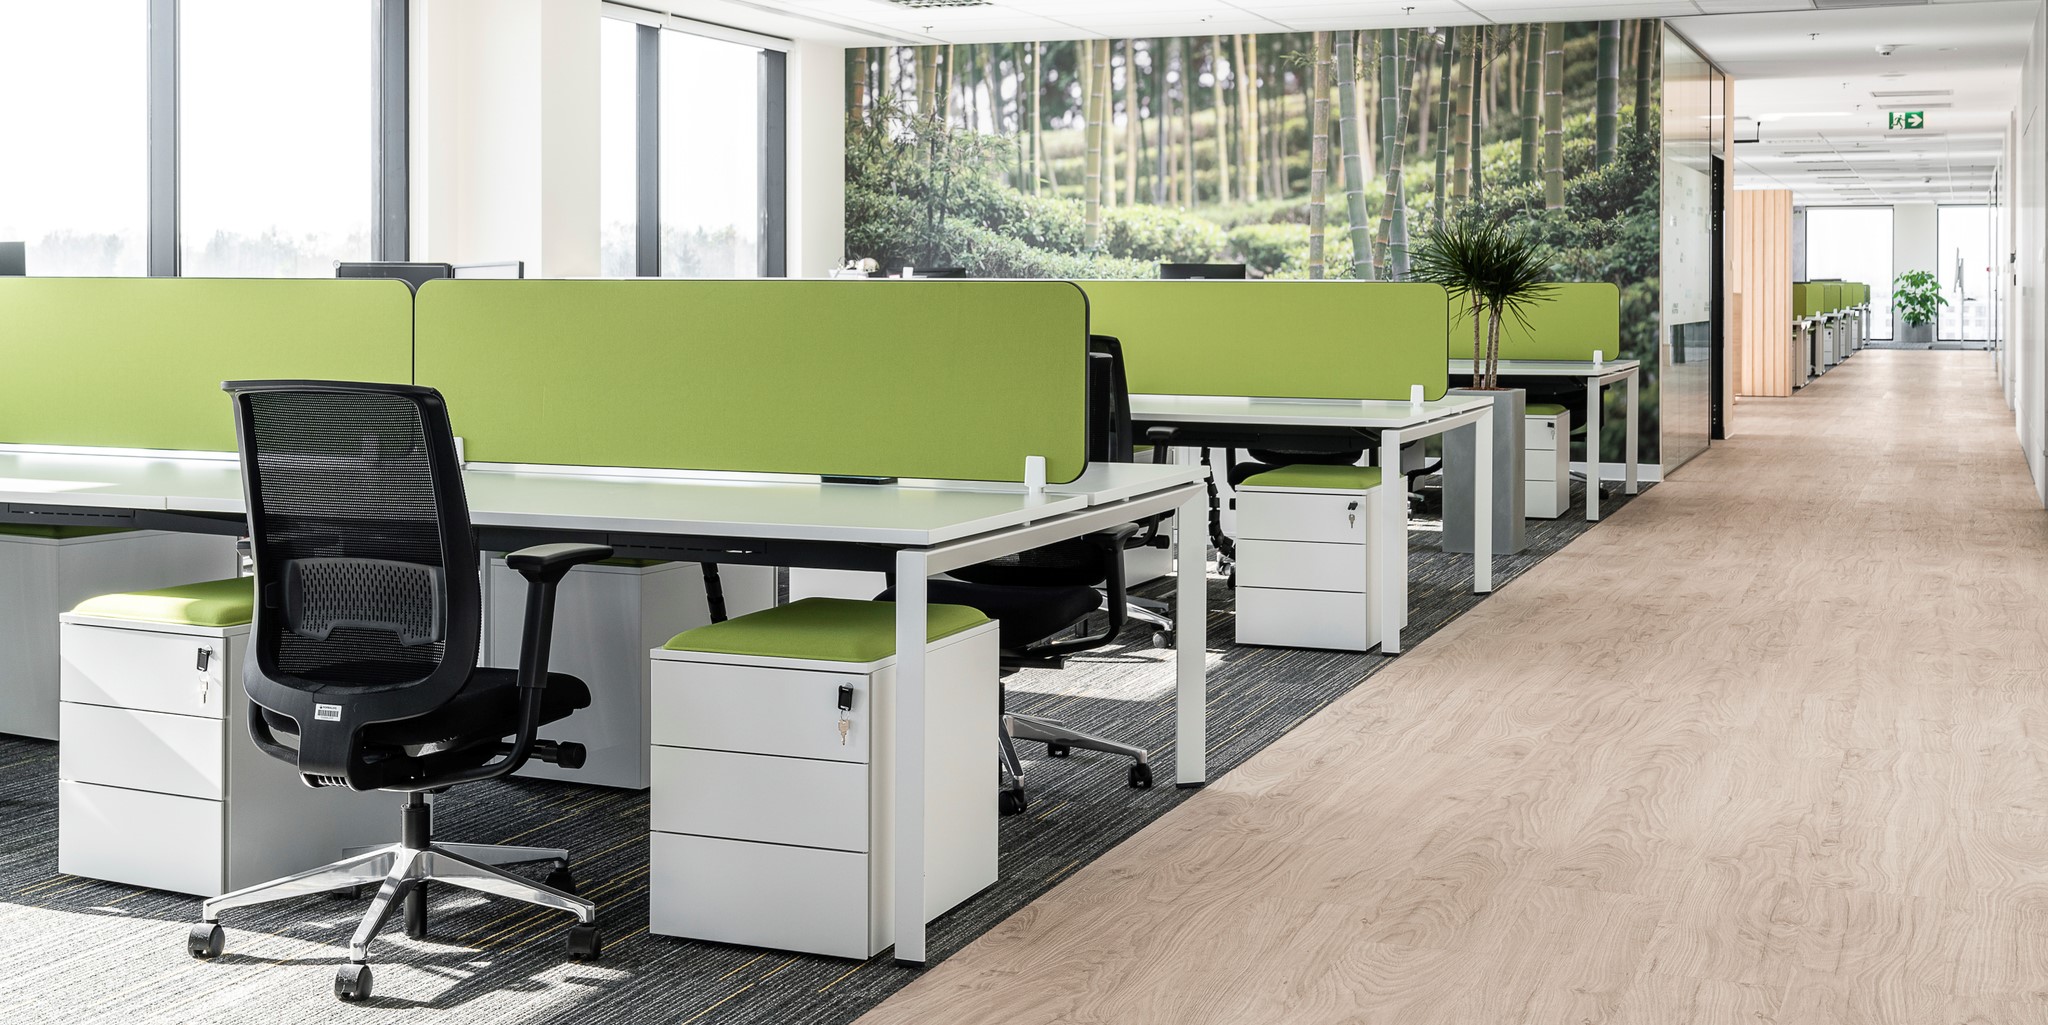 Długie ujęcie z widokiem otwartej przestrzeni biurowej przedstawiające rzędy oddzielnych biurek, szafek, krzeseł, brandingową tapetę na ścianie z egzotycznym lasem